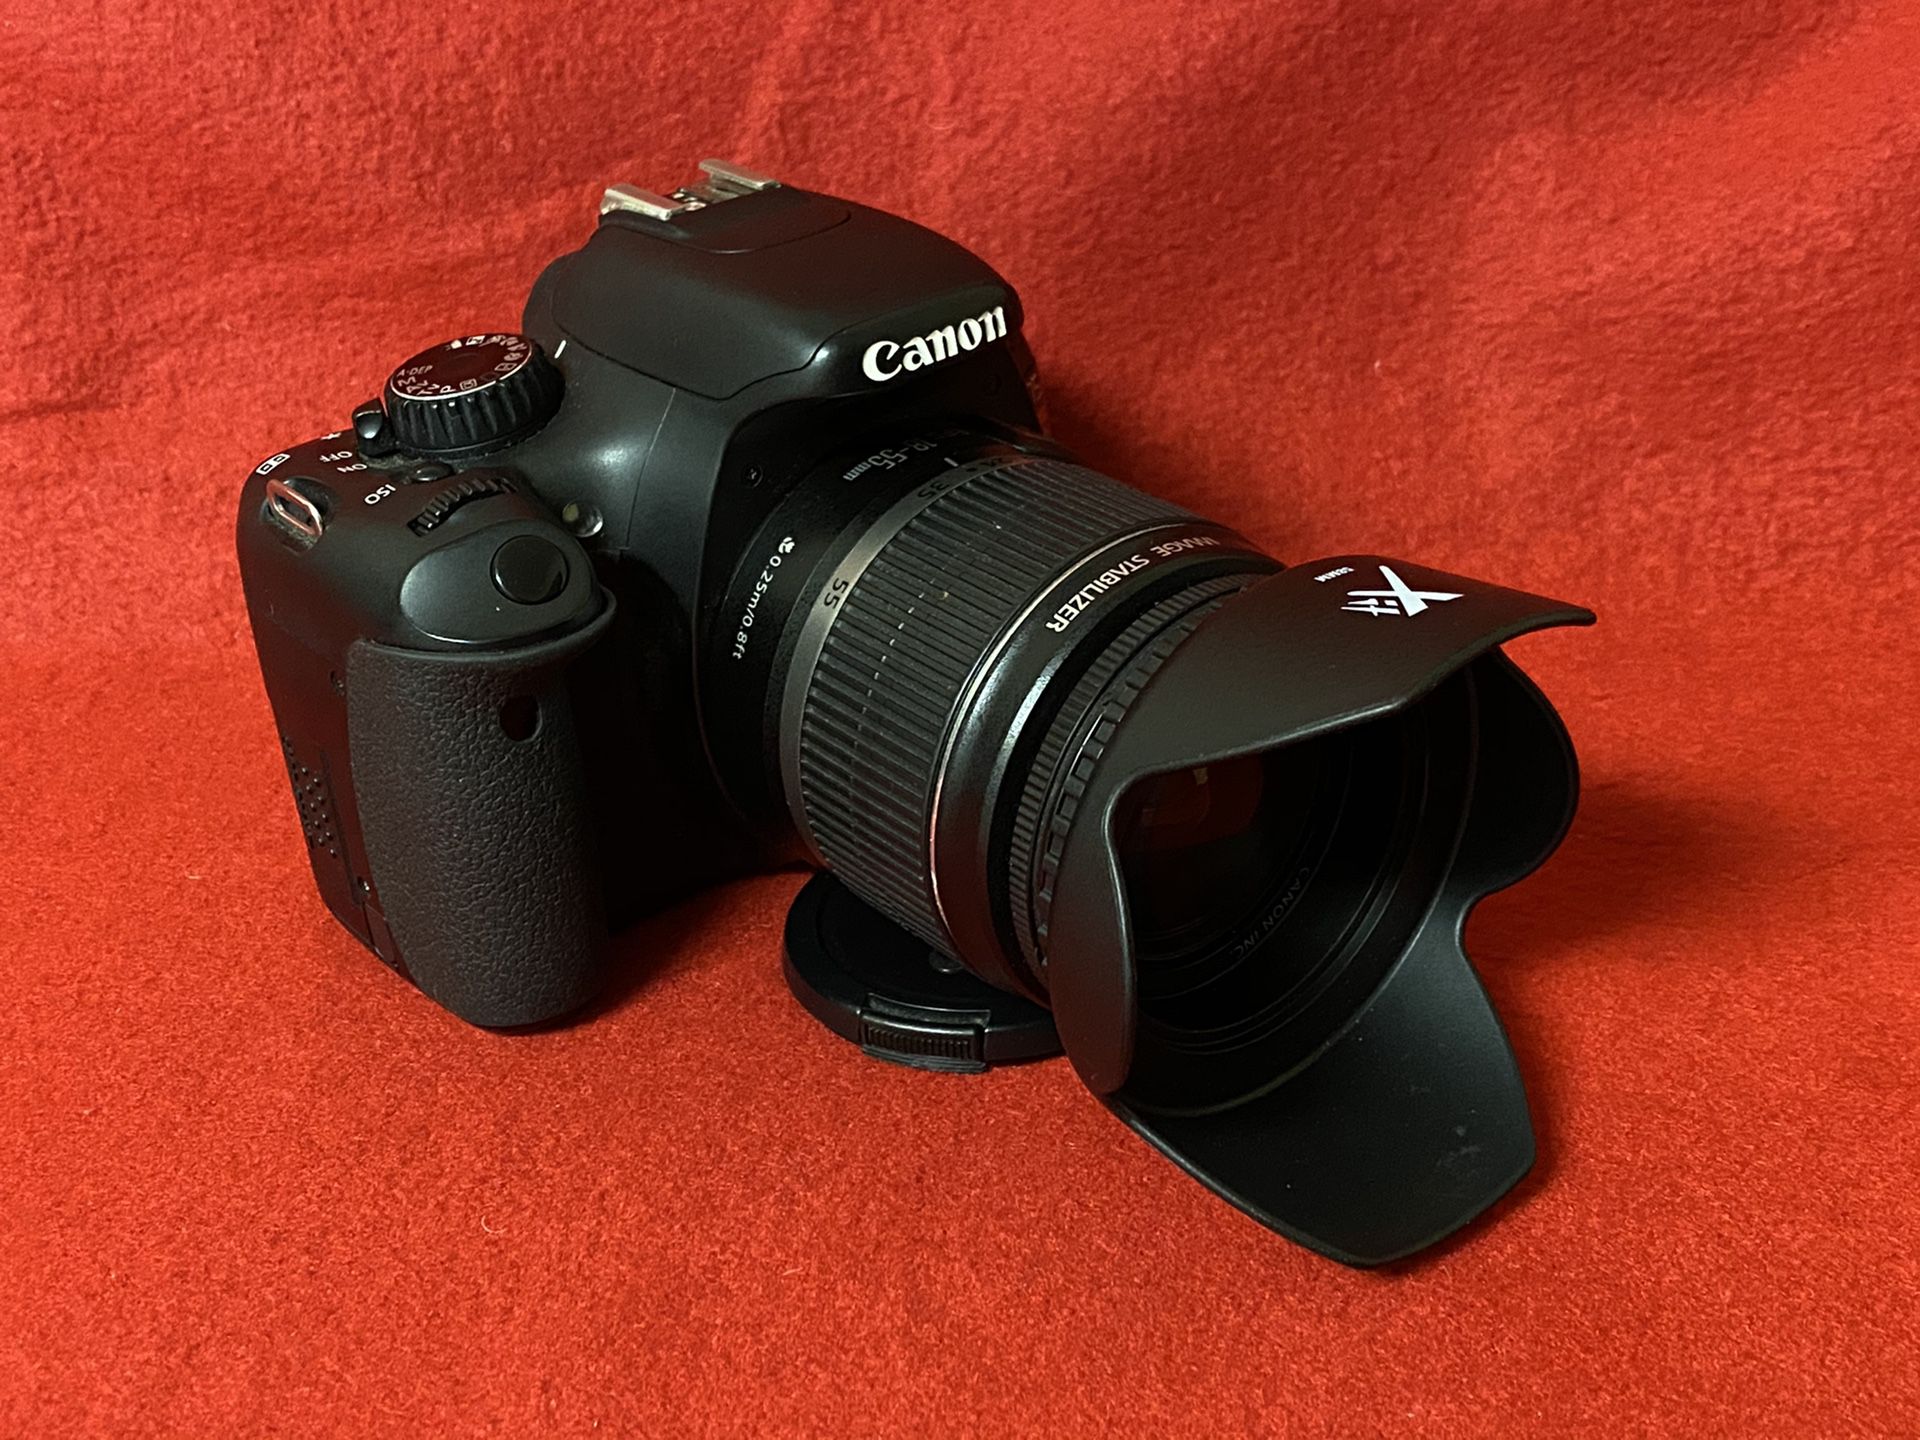 Canon EOS T2i DSLR camera